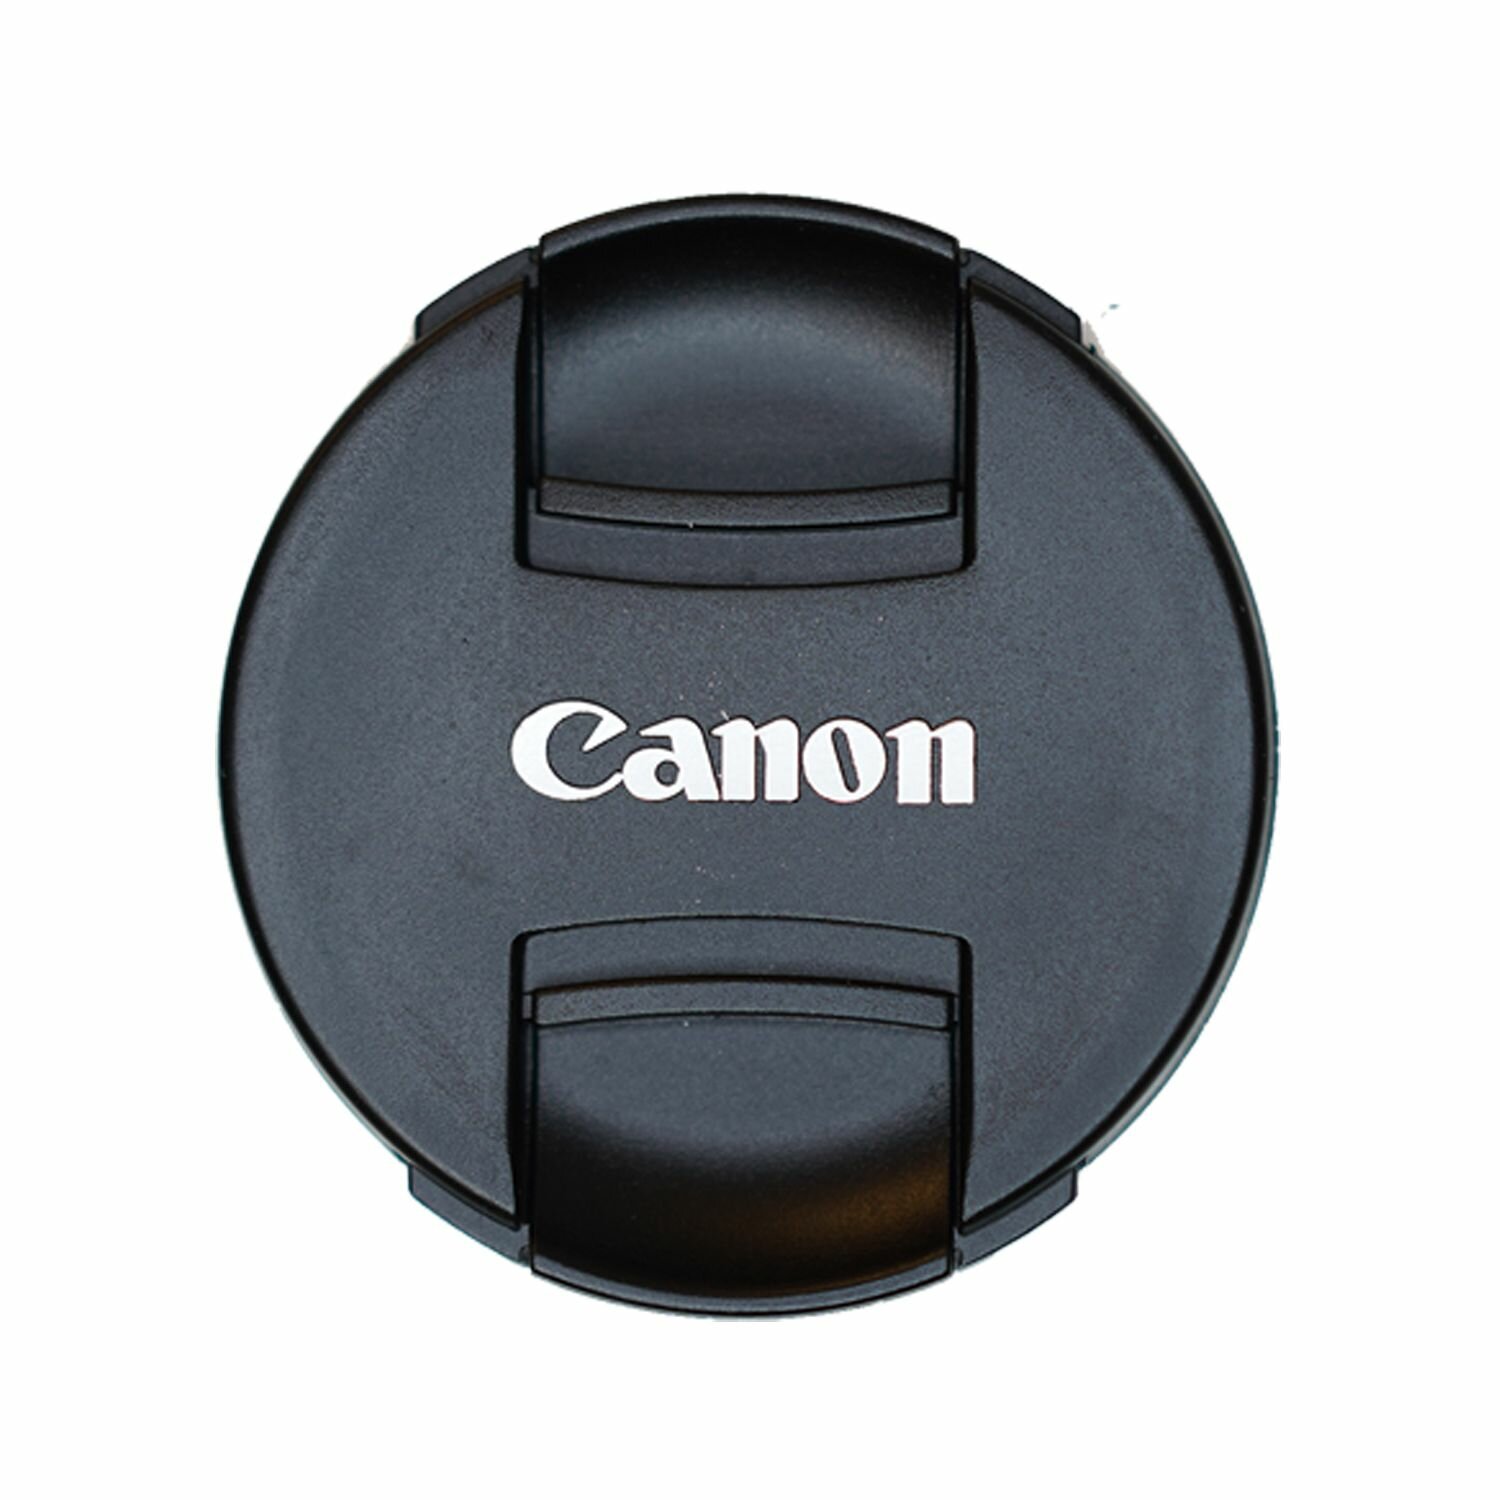 Защитная крышка 58 мм для объектива с надписью "Canon"